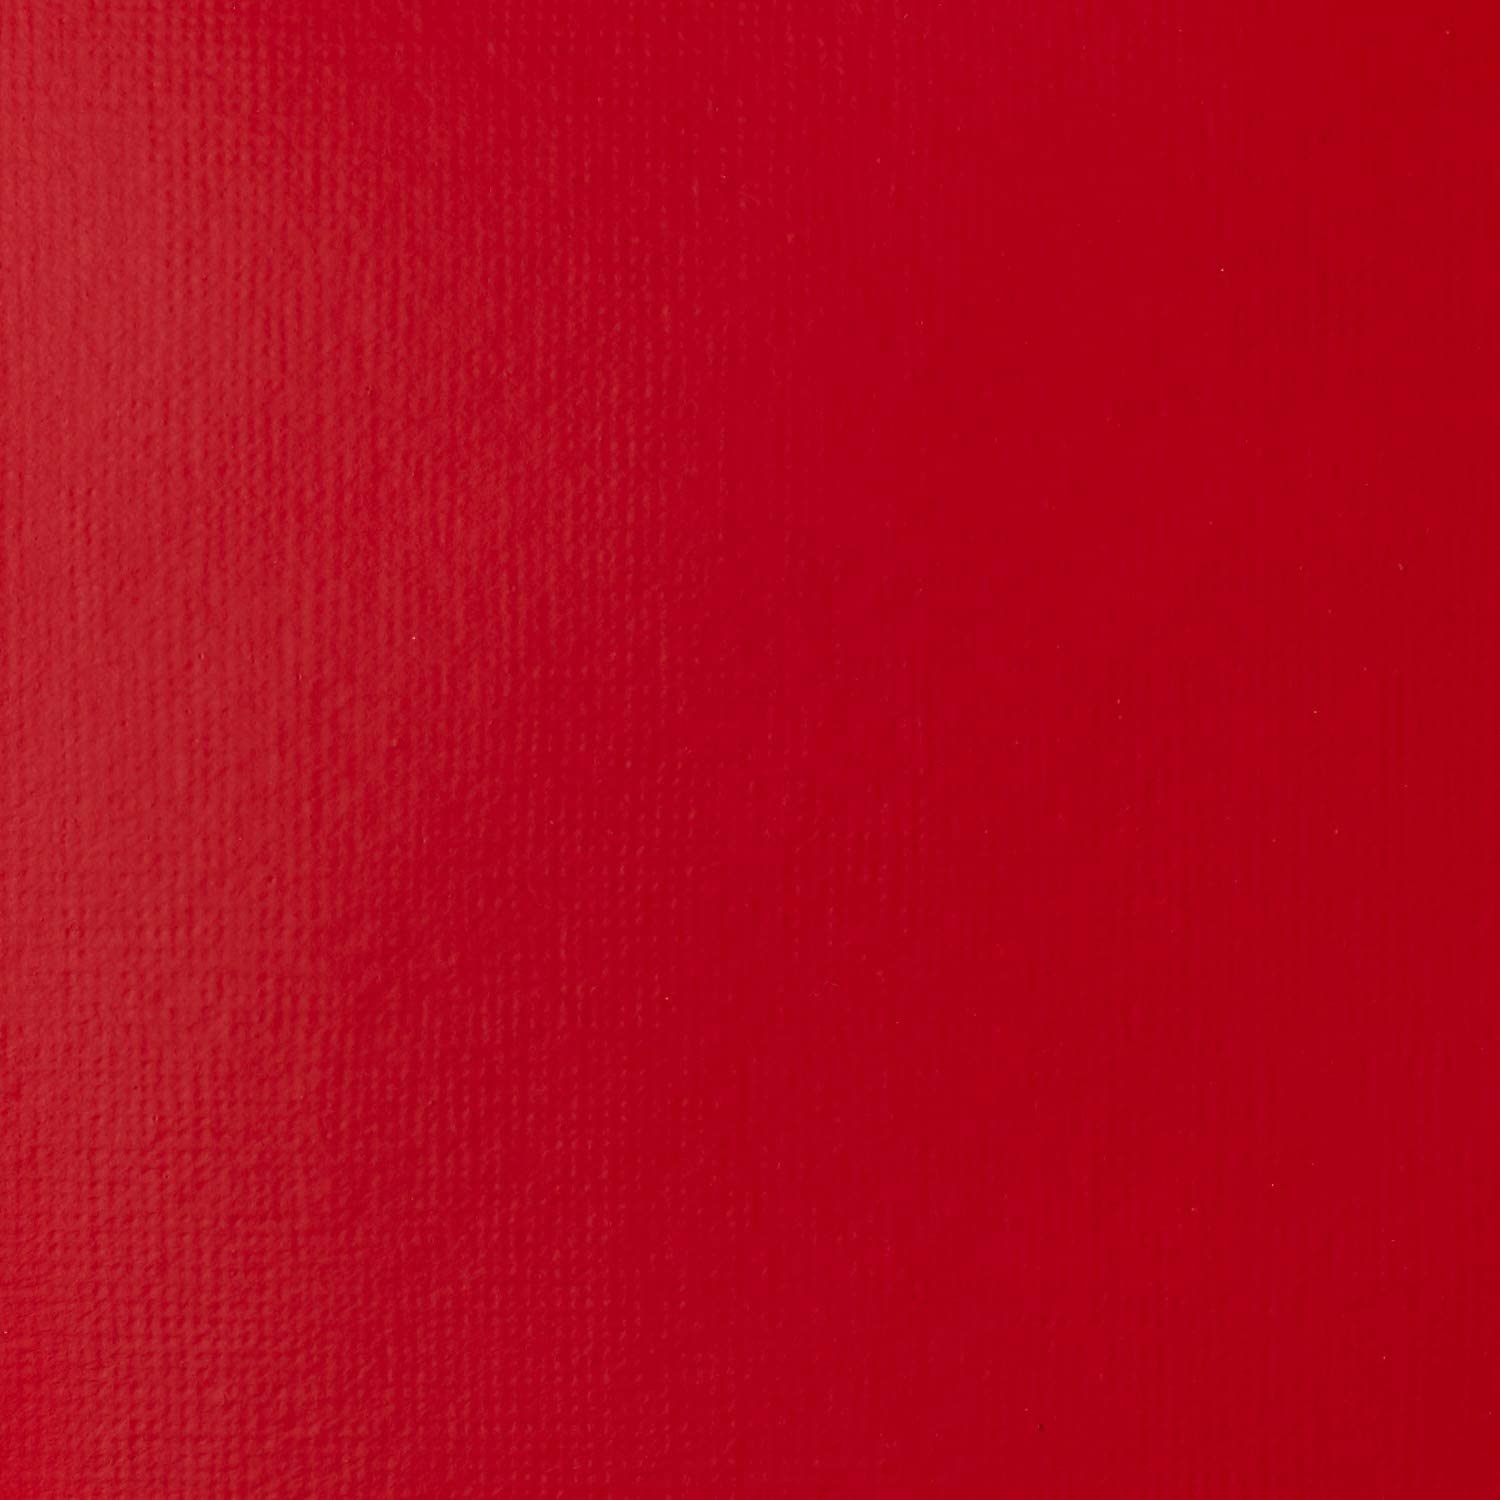 1046151 - Cadmium Red Medium Hue 2.jpg